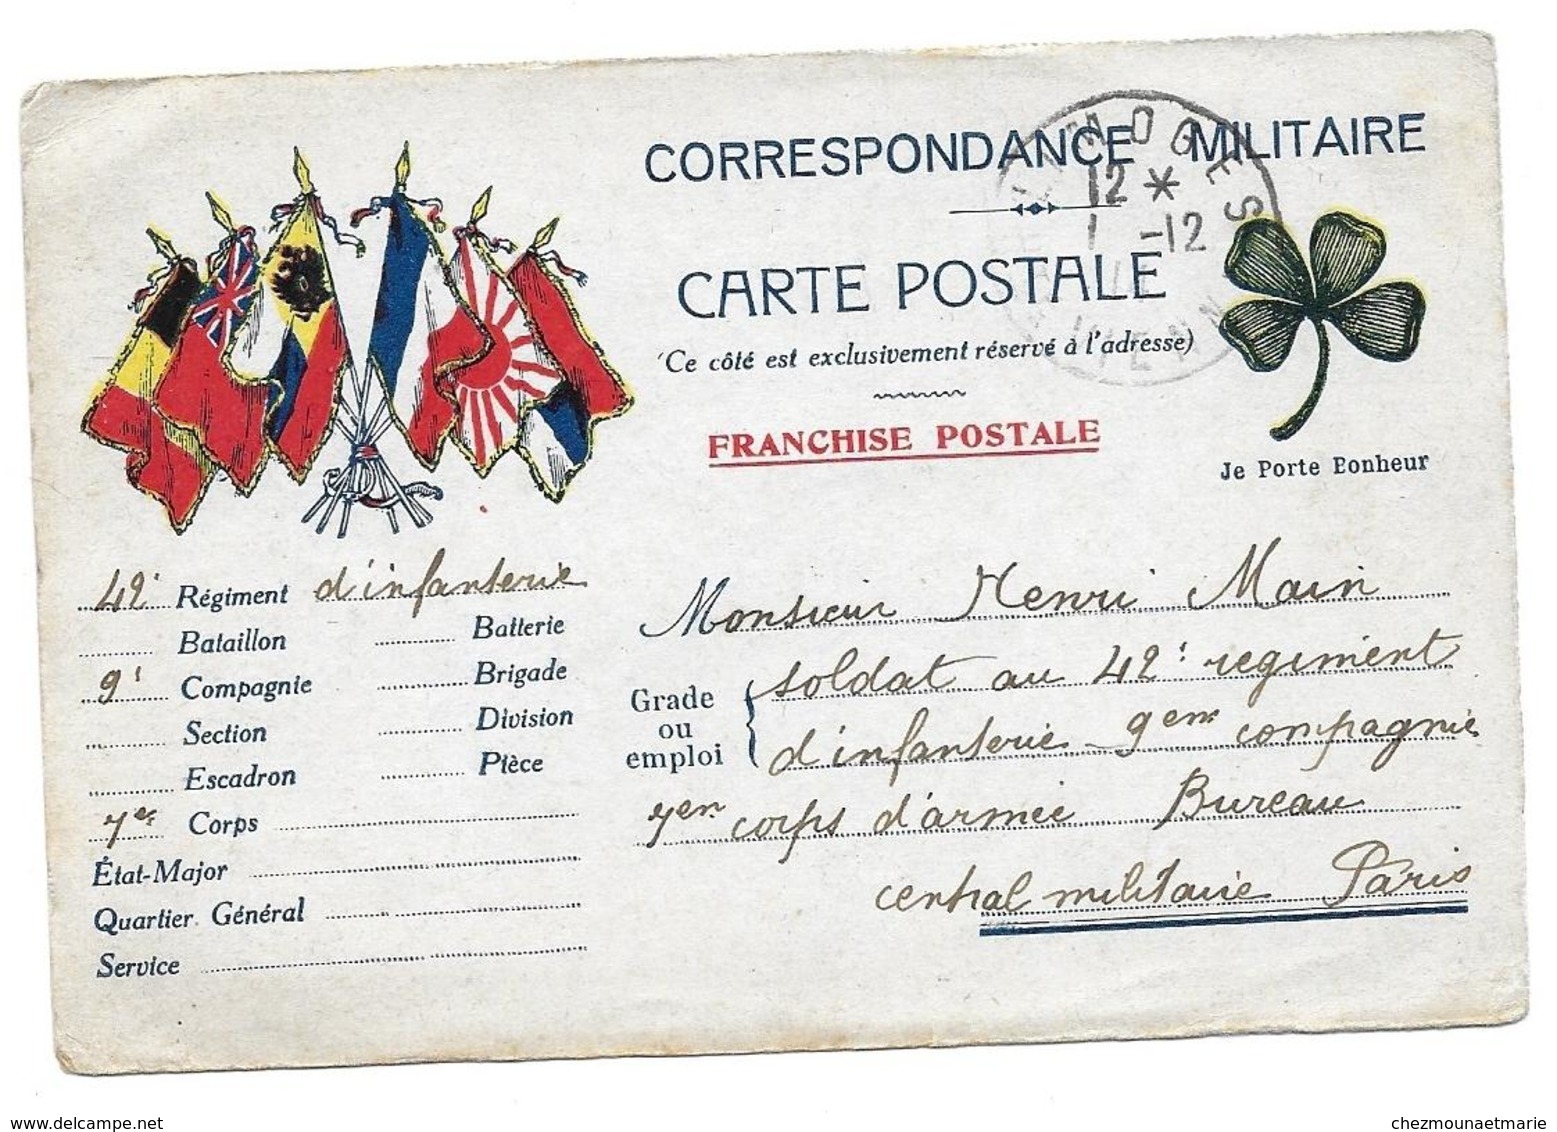 WWI HENRI MAIN SOLDAT AU 42 RI BUREAU CENTRAL PARIS DE SA FEMME A LIMOGES - CPA CORRESPONDANCE MILITAIRE - Guerre 1914-18